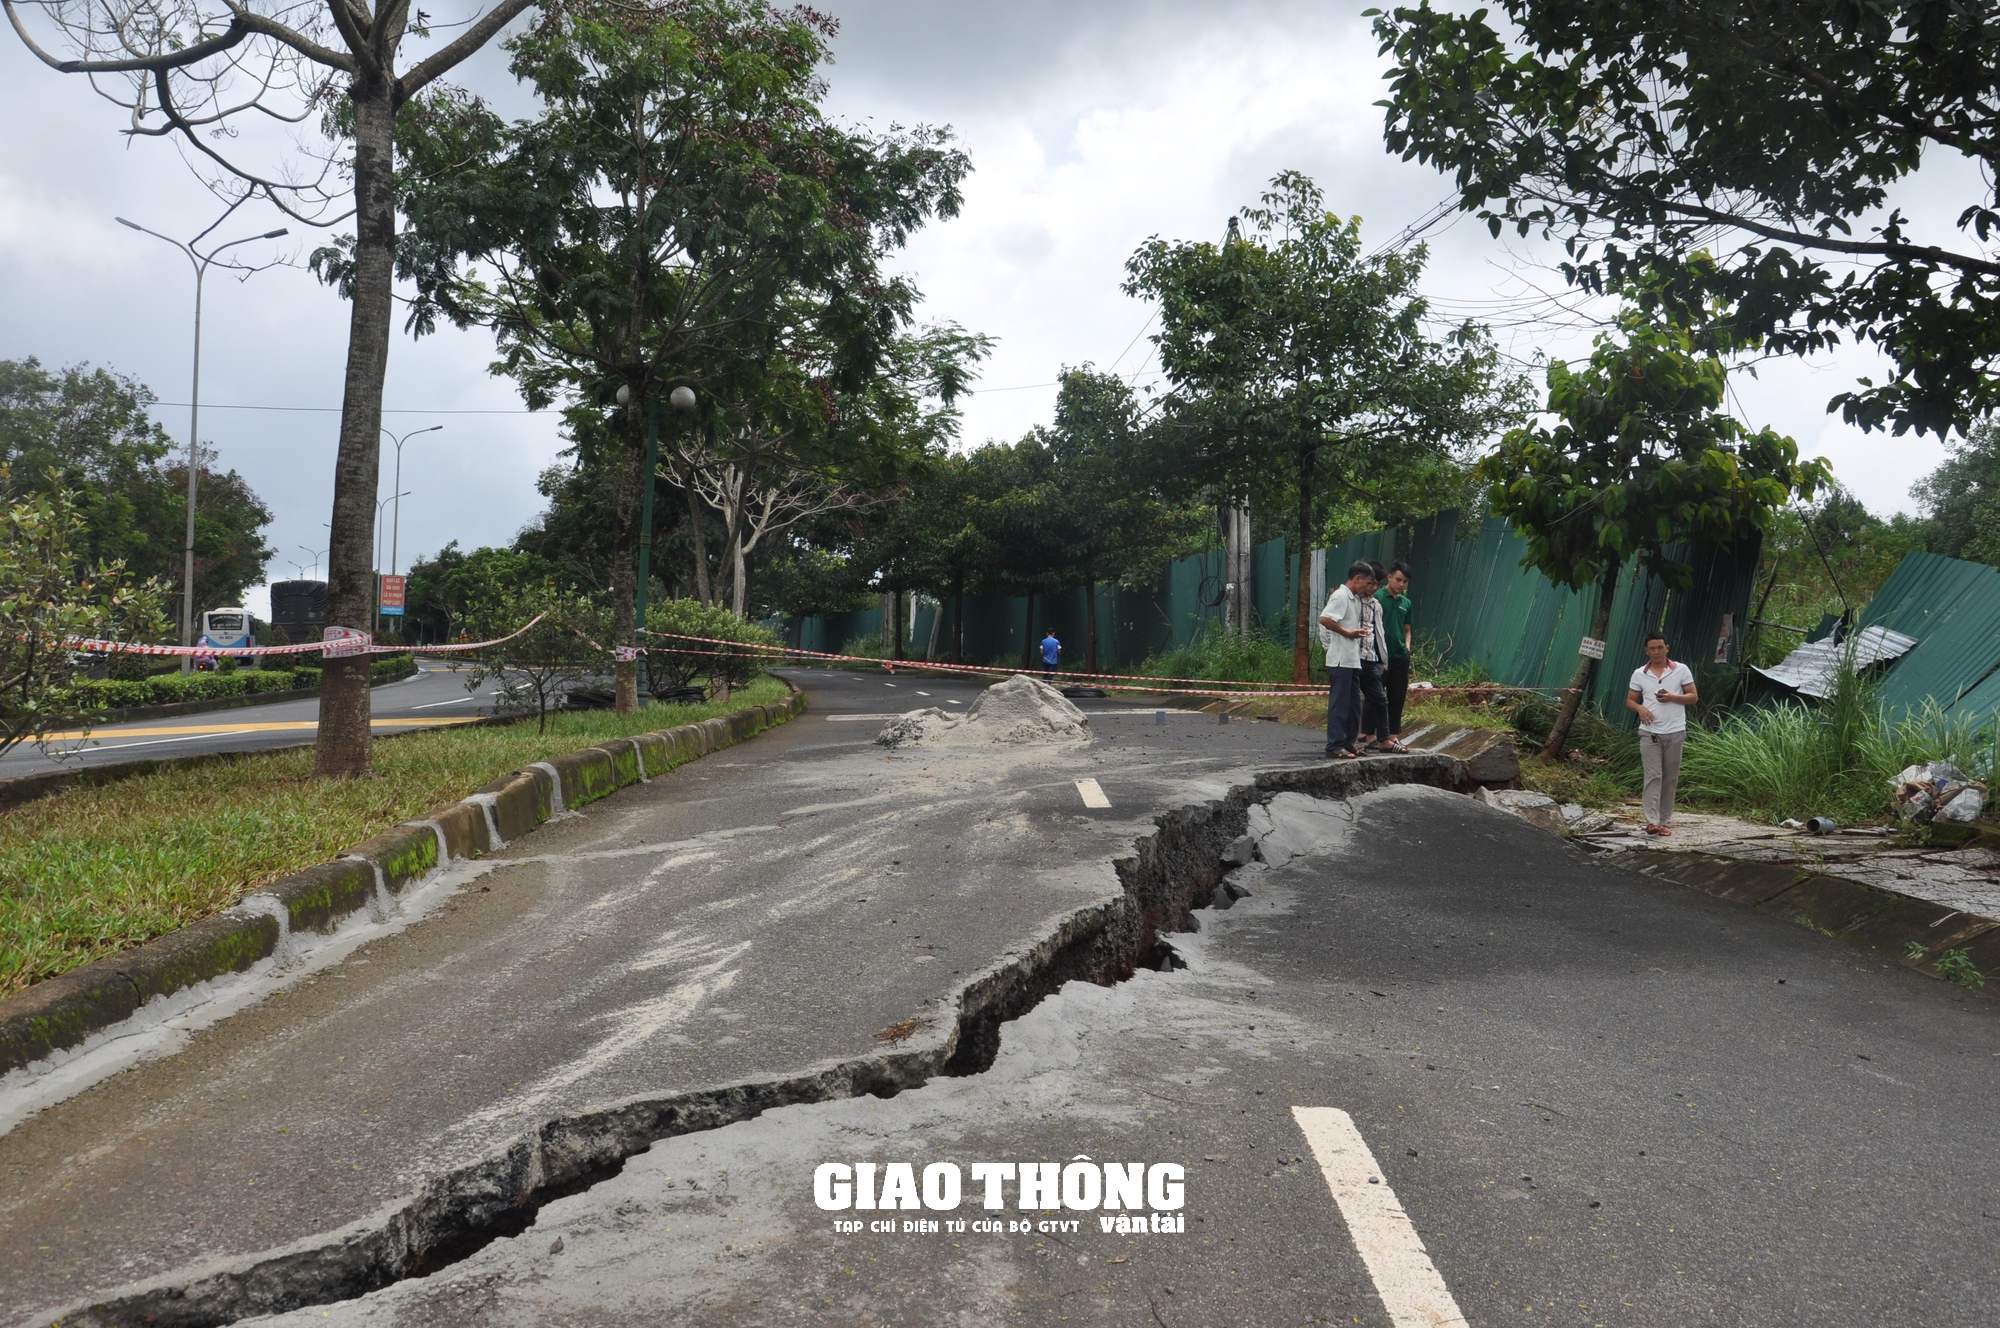 Cận cảnh sụt lún QL14 ở Đắk Nông: Vết sụt trượt liên tục mở rộng, nguy cơ mất đường - Ảnh 7.